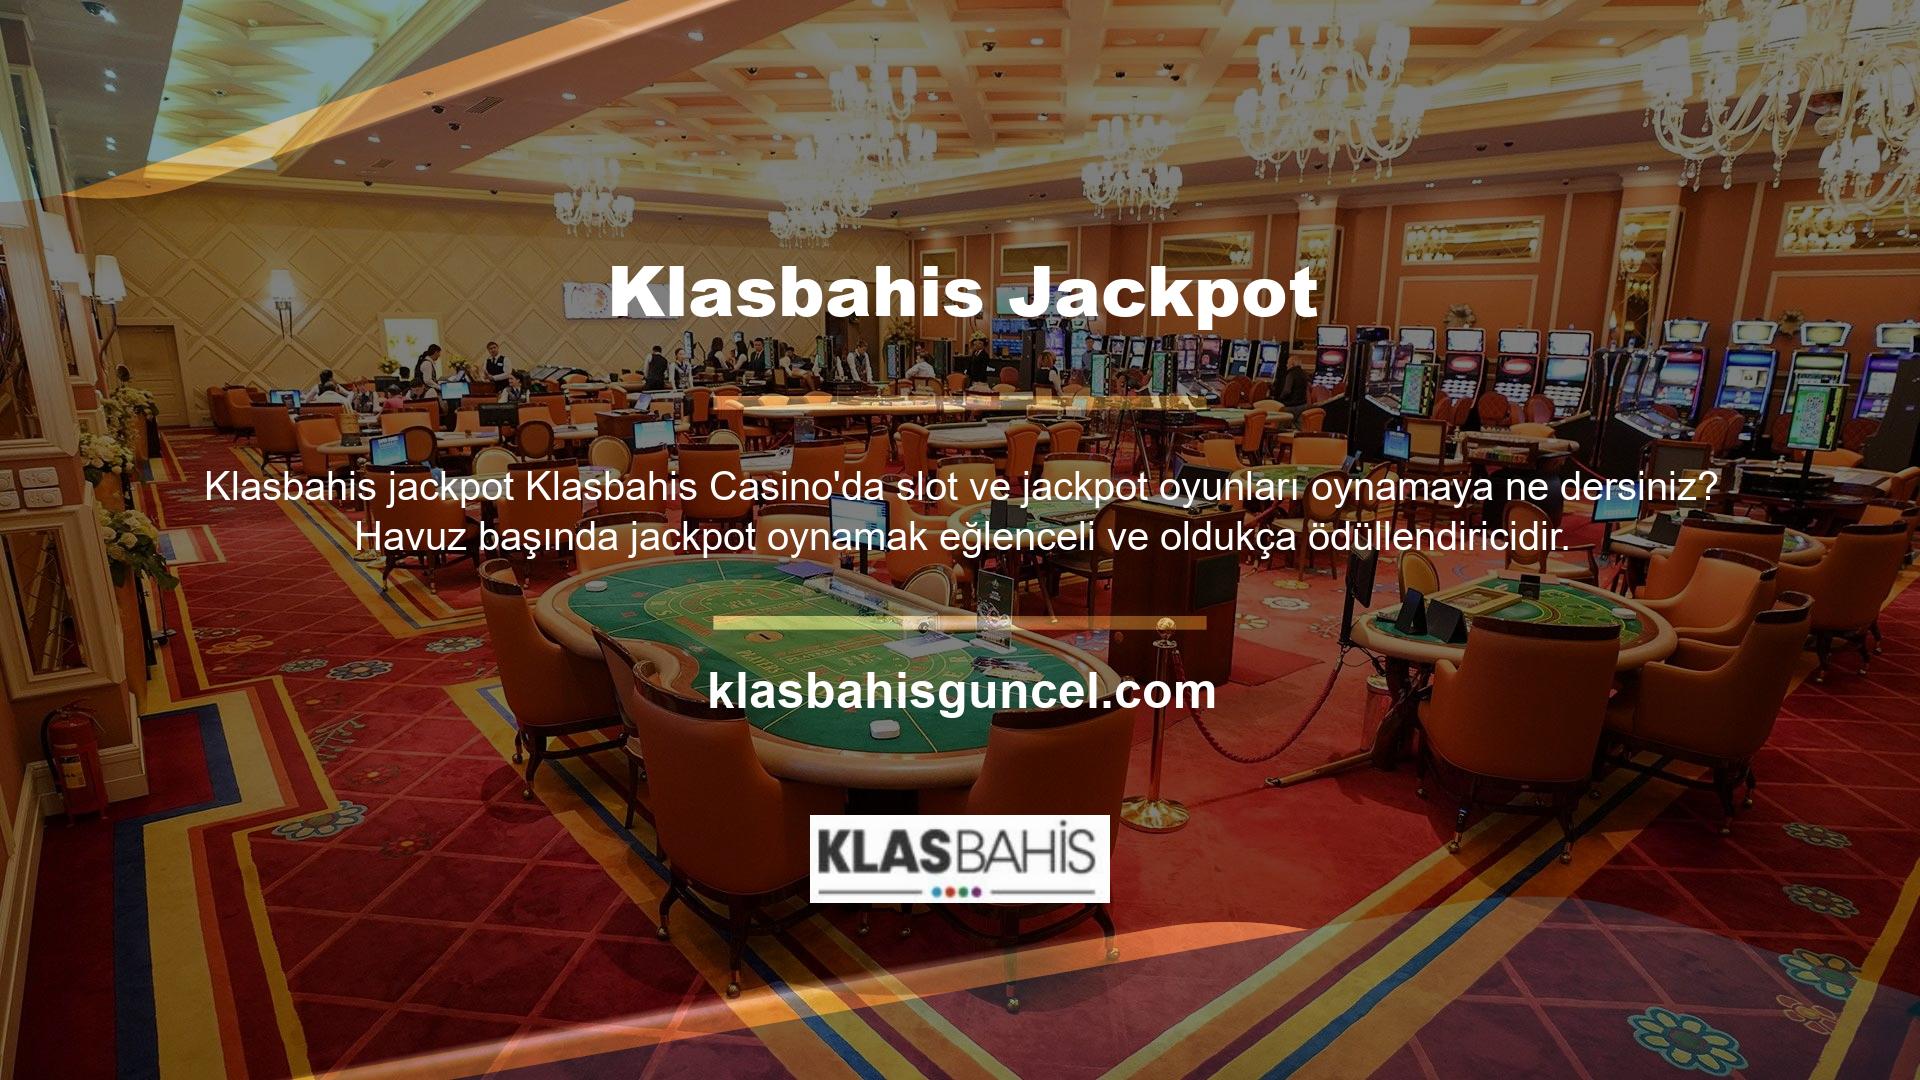 Klasbahis Casino bunun farkındadır ve slot makinelerine ve jackpotlara yeni ve modern bir alternatif sunmaktadır